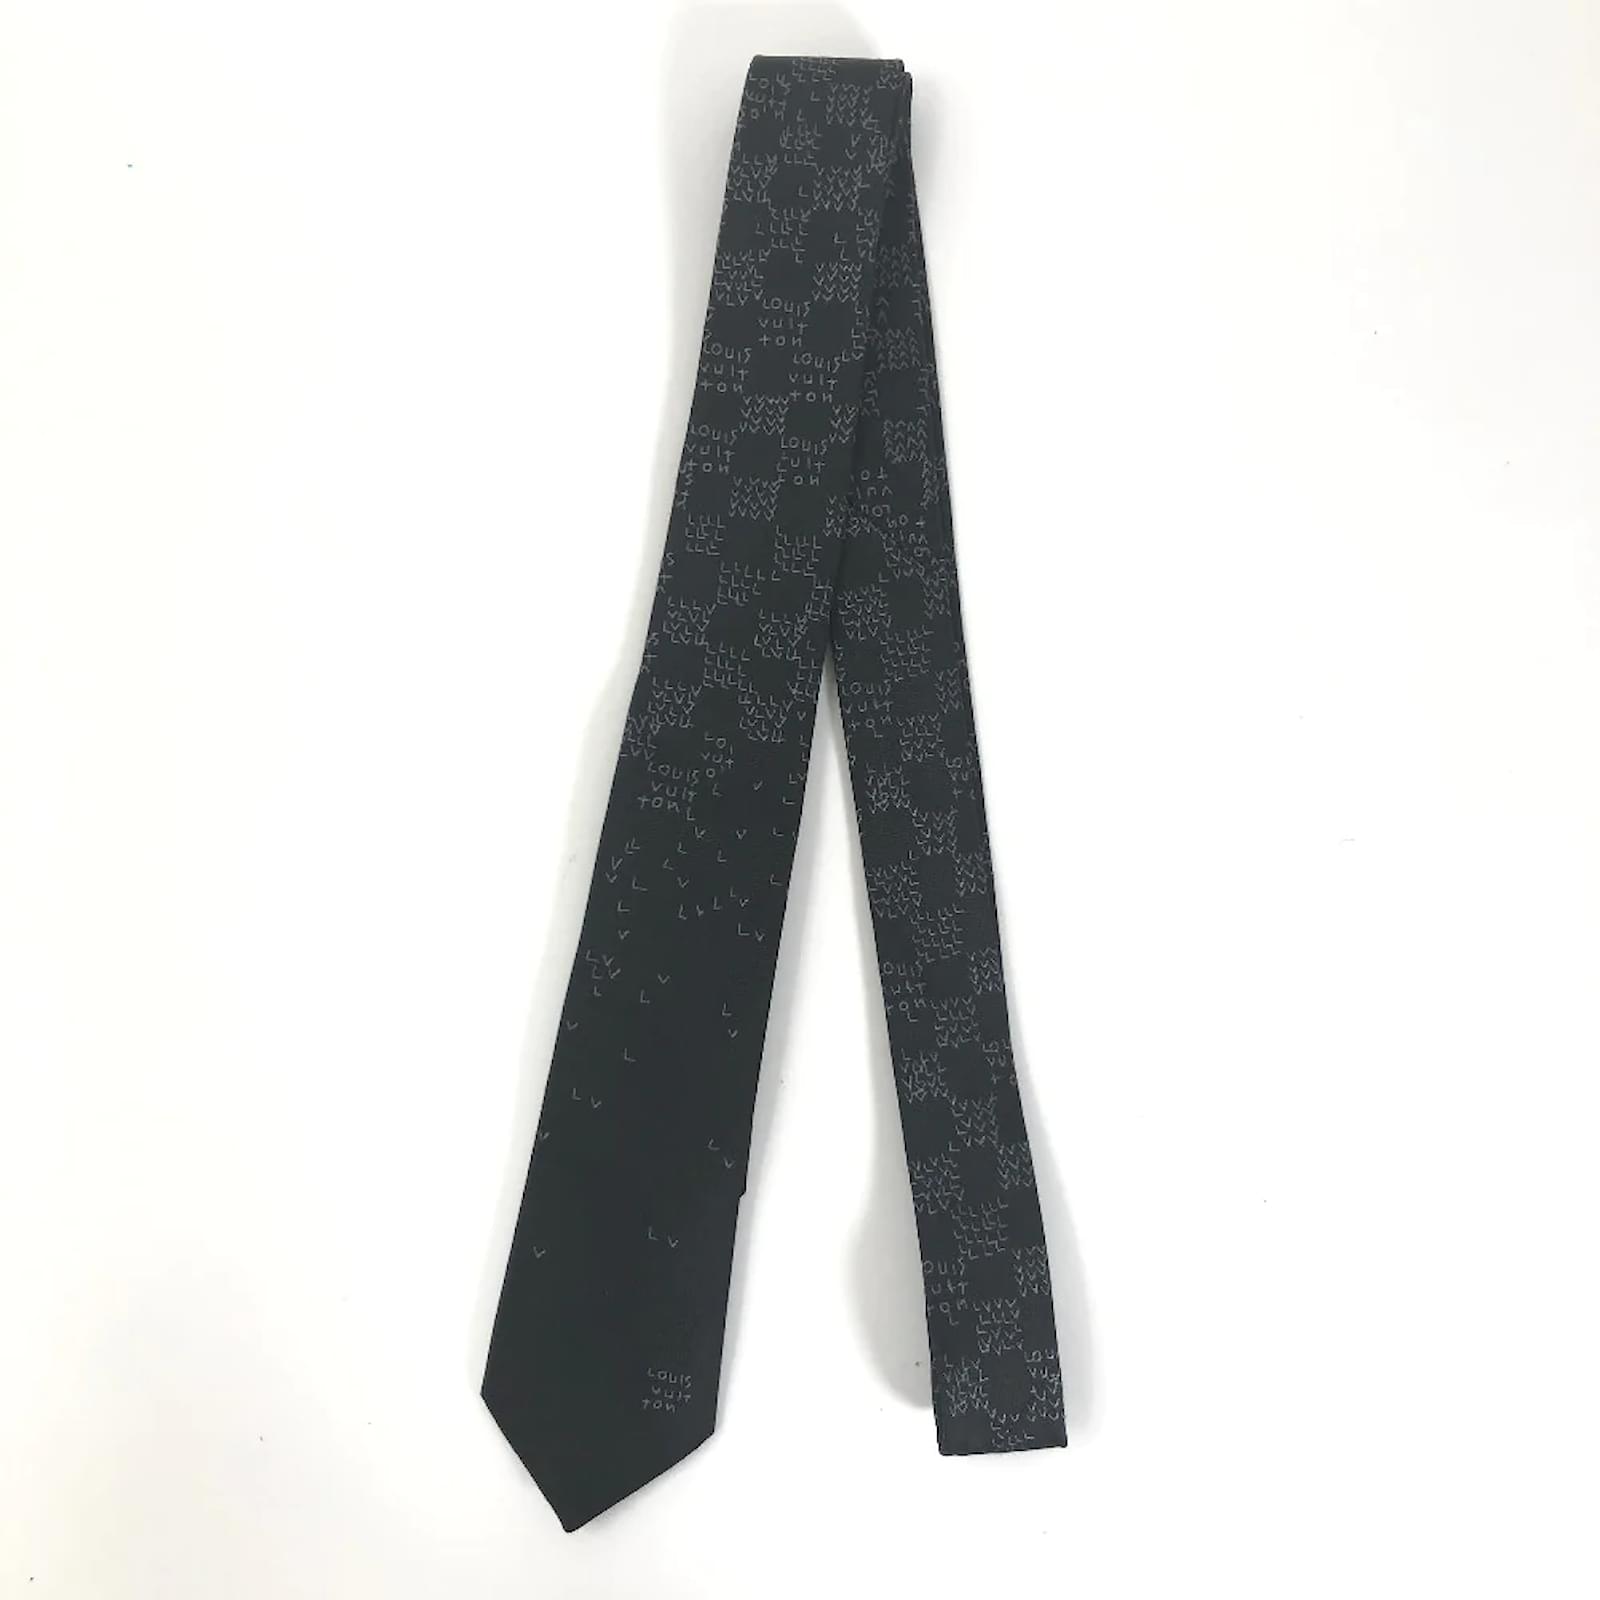 LOUIS VUITTON Monogram Etui 5 Cravat Necktie Case M47535 LV Auth tb439